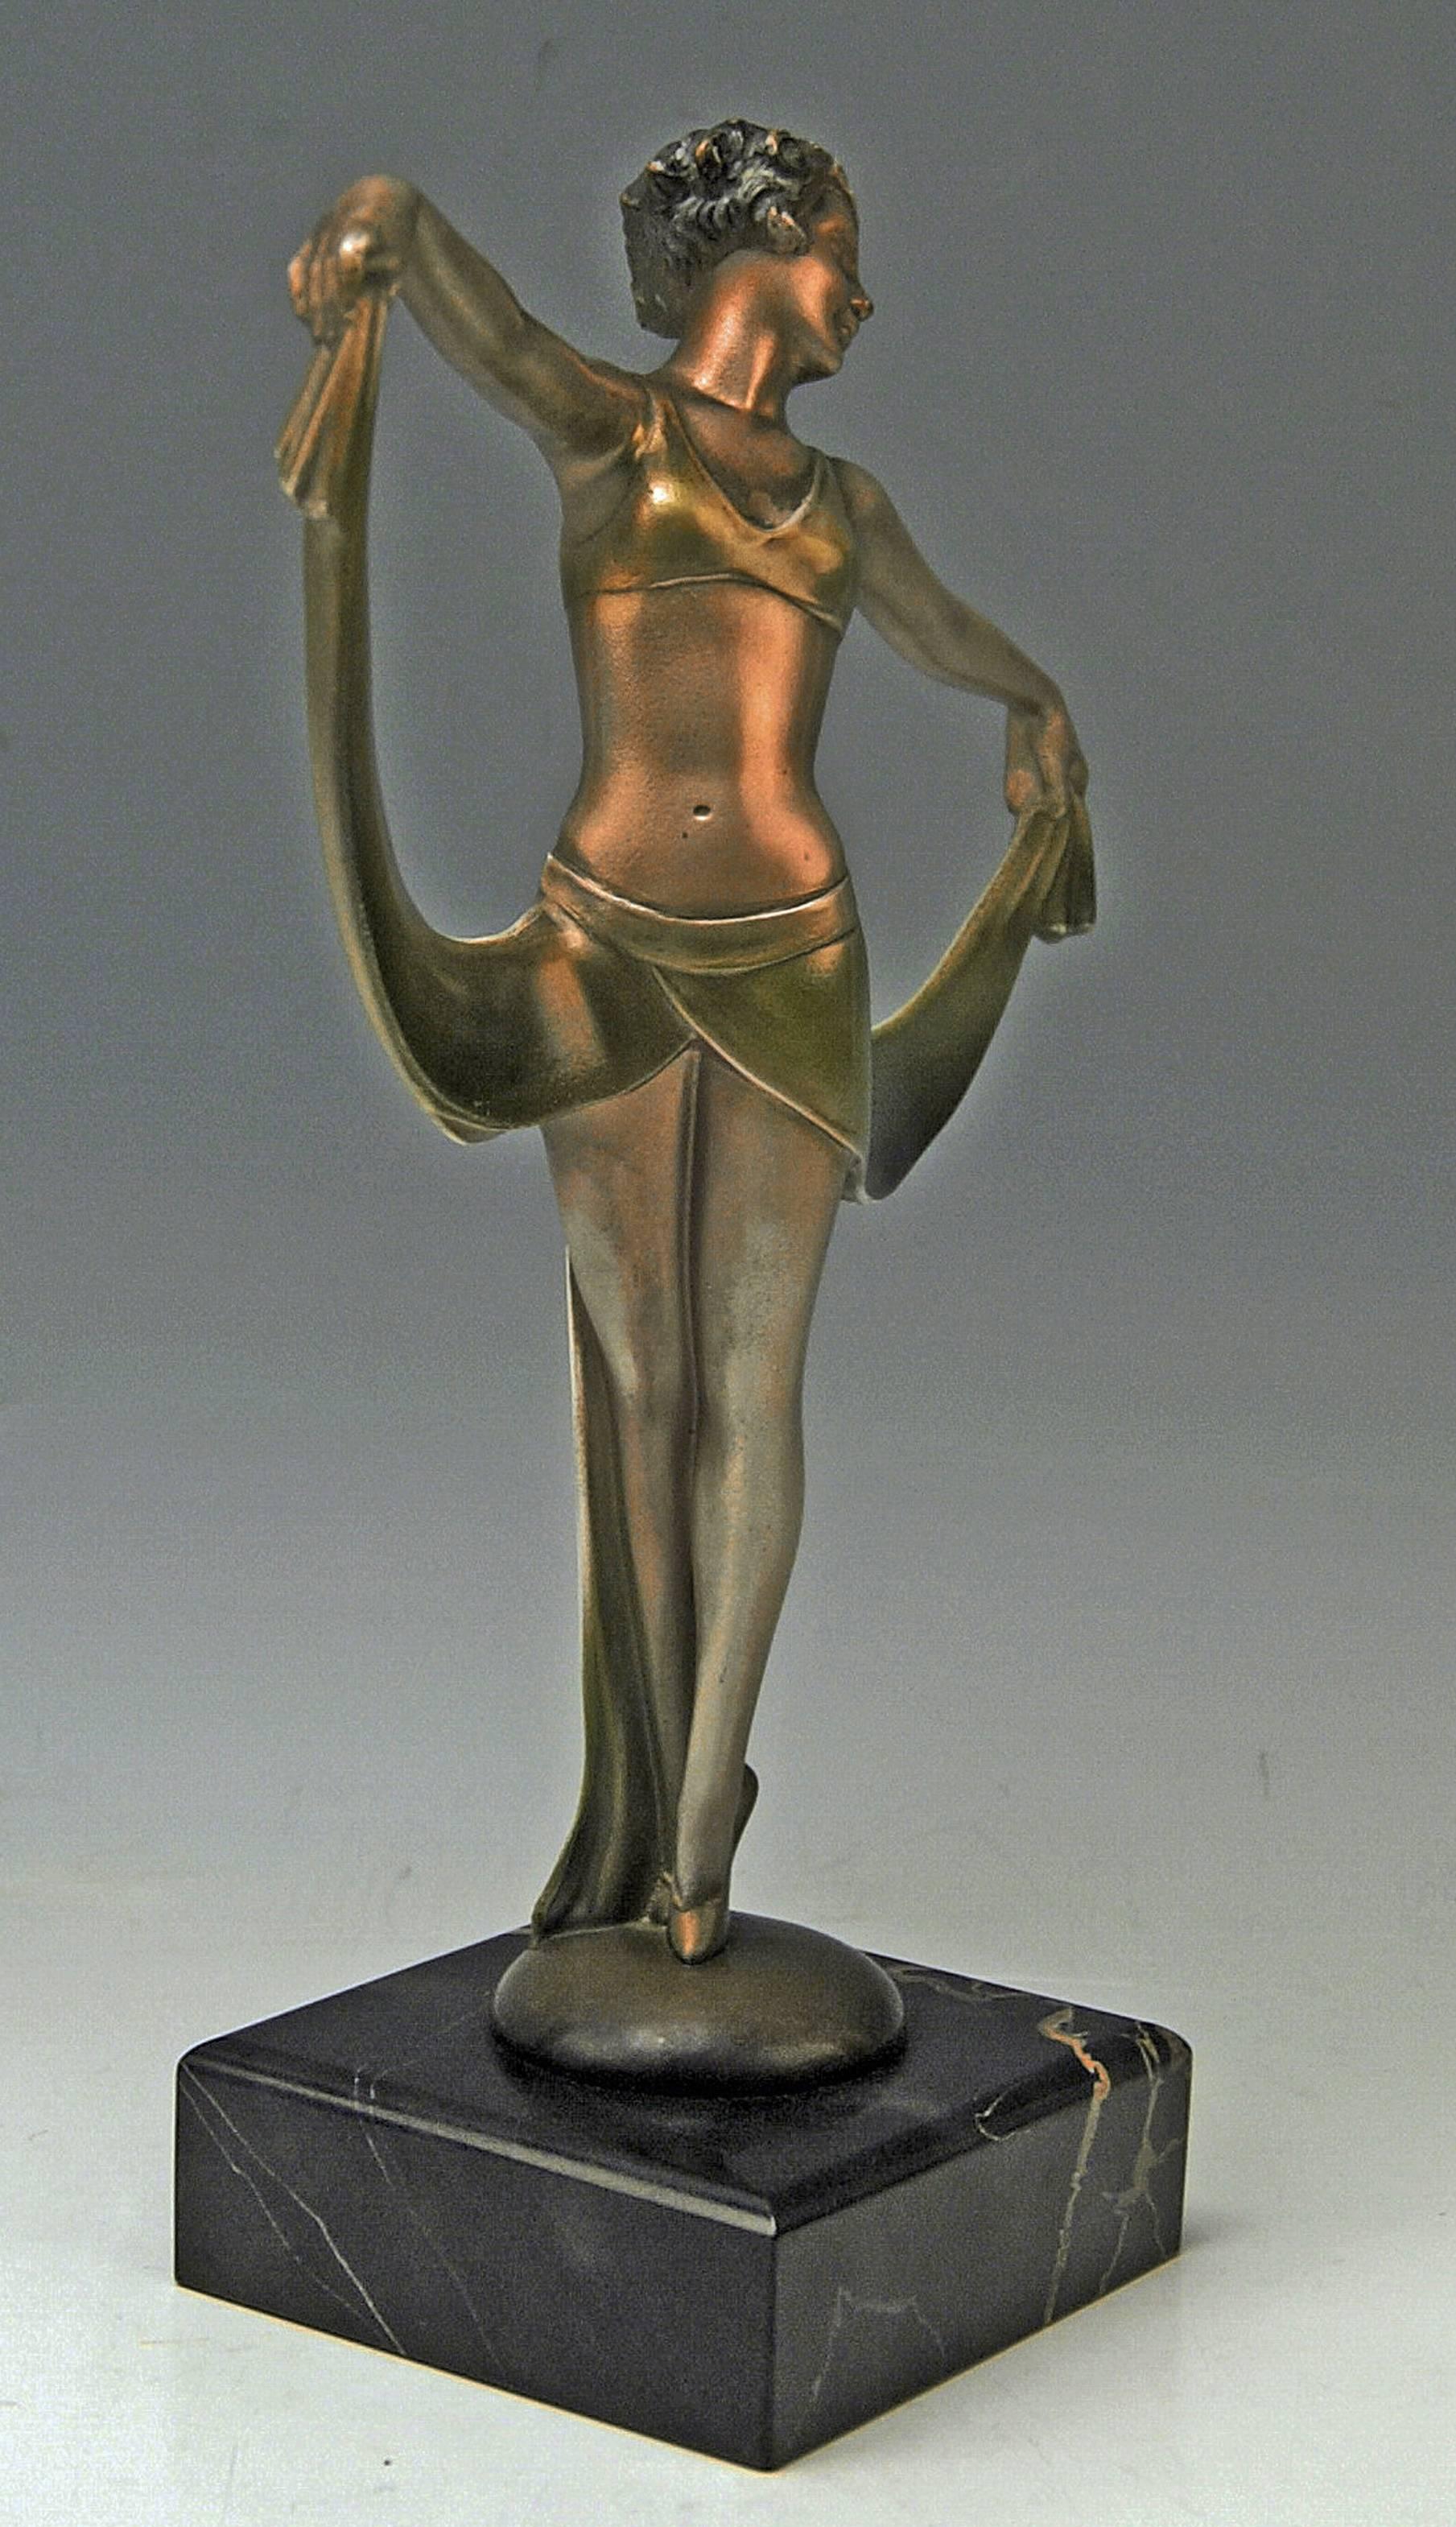 lorenzl bronze dancer